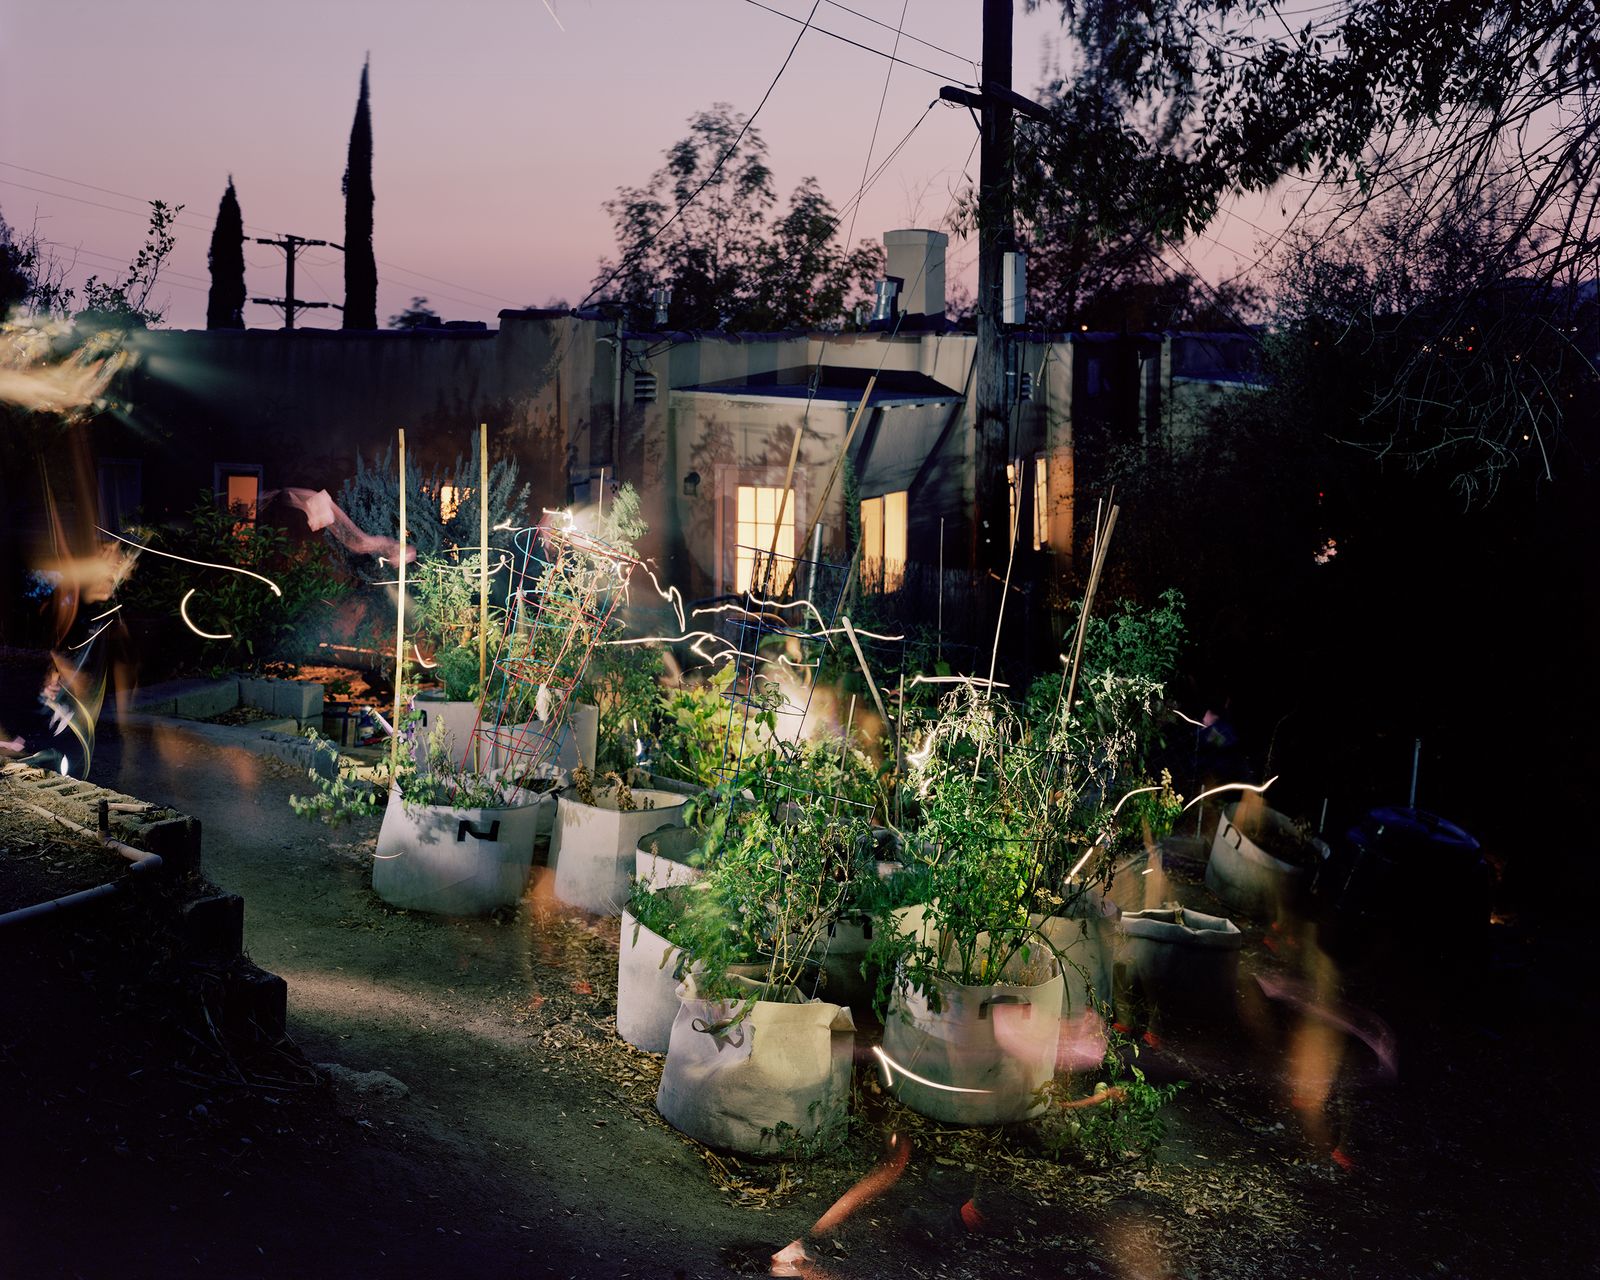 © Paloma Dooley - Watering My Plants at Night